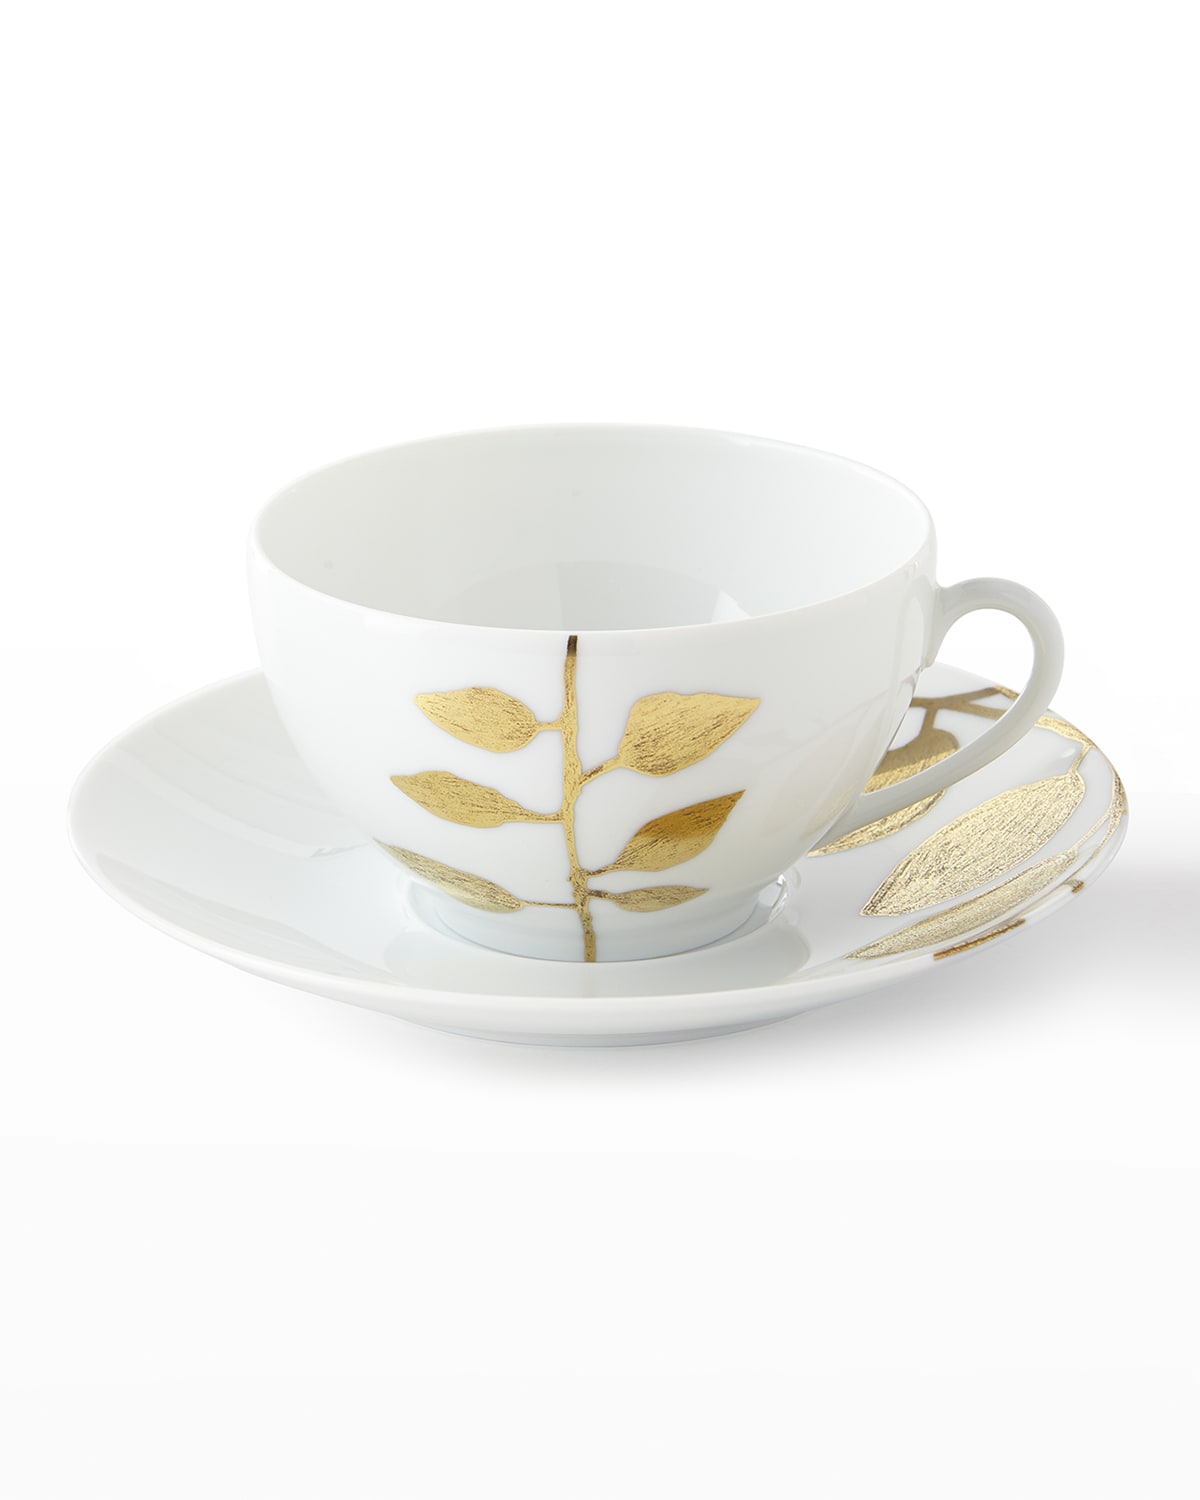 Porcelain- Rim White Demitasse (espresso) Cup and Saucer- 3.5oz